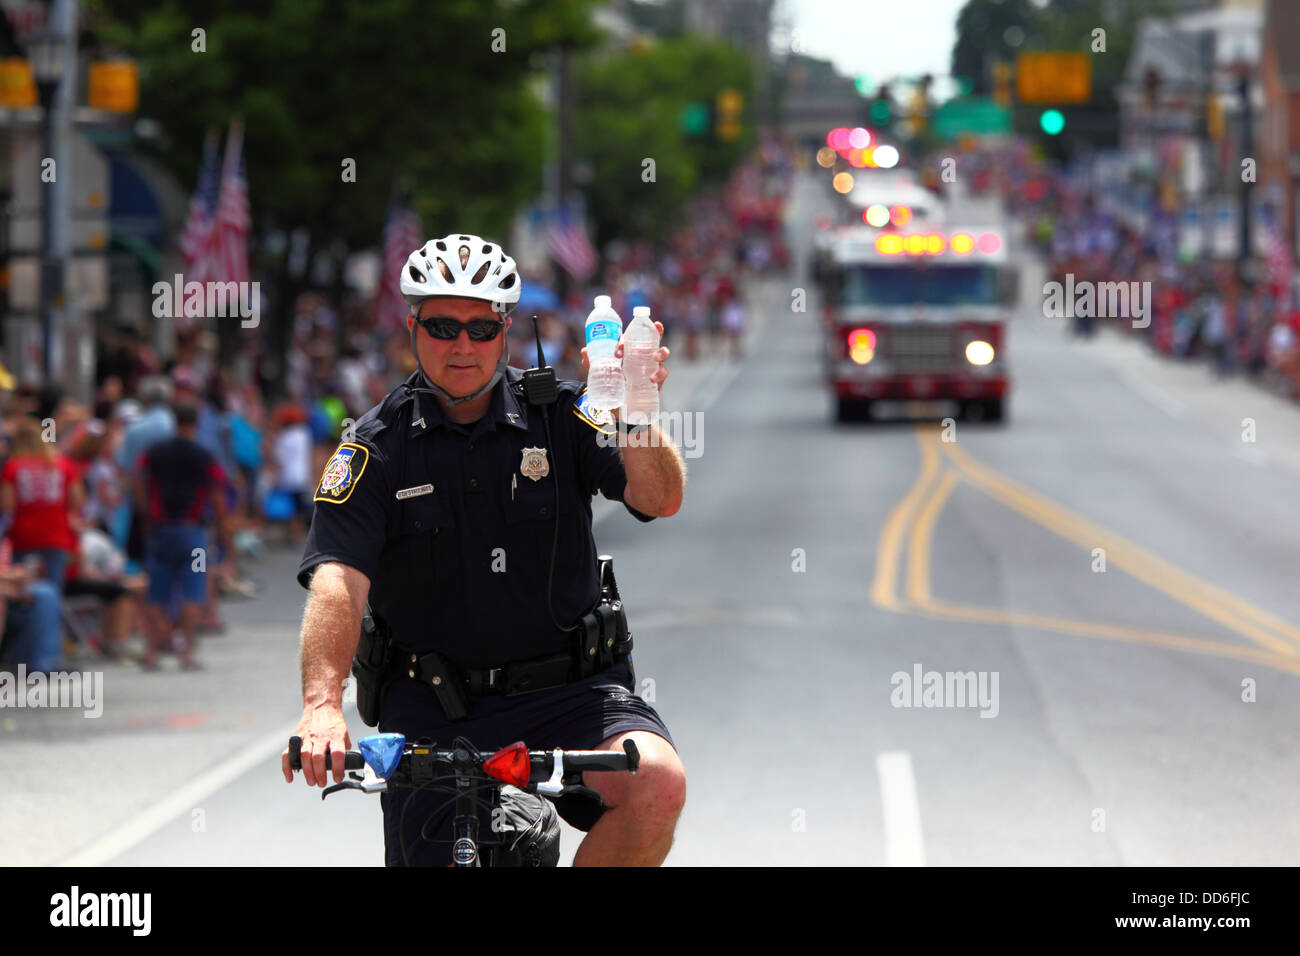 Polizist auf dem Fahrrad, der Wasserflaschen hält, um während der Parade zum Unabhängigkeitstag am 4th. Juli in Catonsville, Maryland, USA, vor der Gefahr einer Austrocknung zu warnen Stockfoto